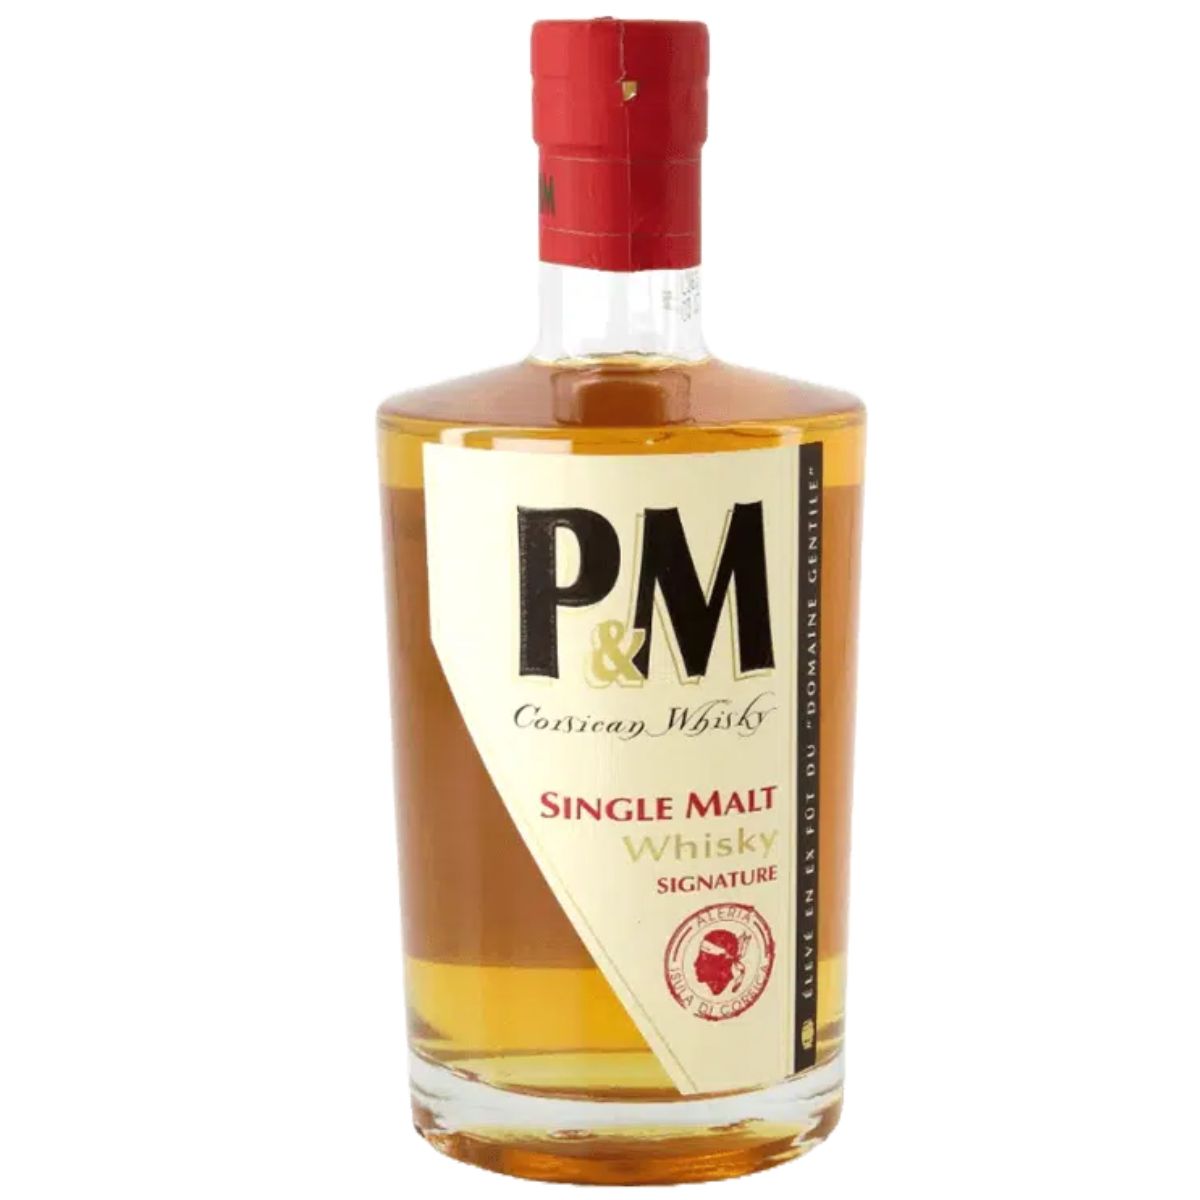 P&M - Single Malt Signature